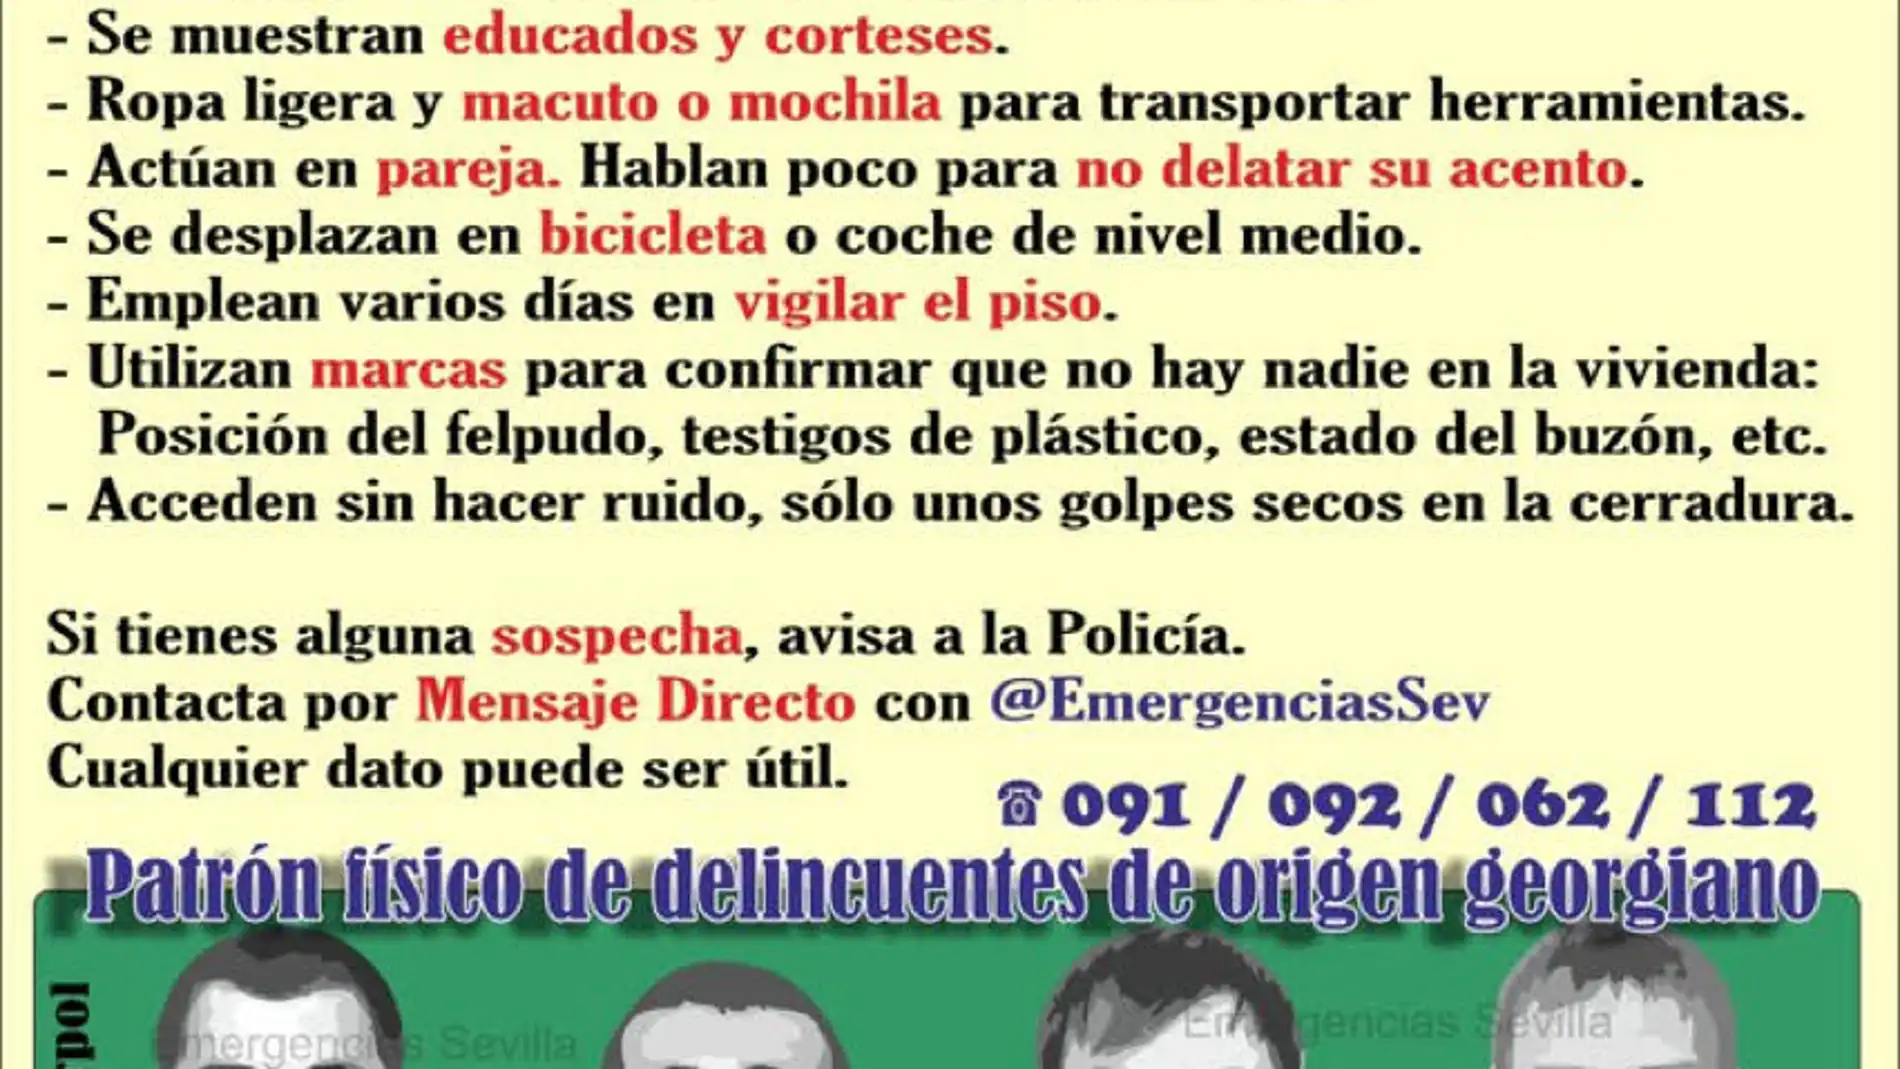 Lista de consejos difundidos por la Policía y Emergencias Sevilla para prevenir los robos en viviendas